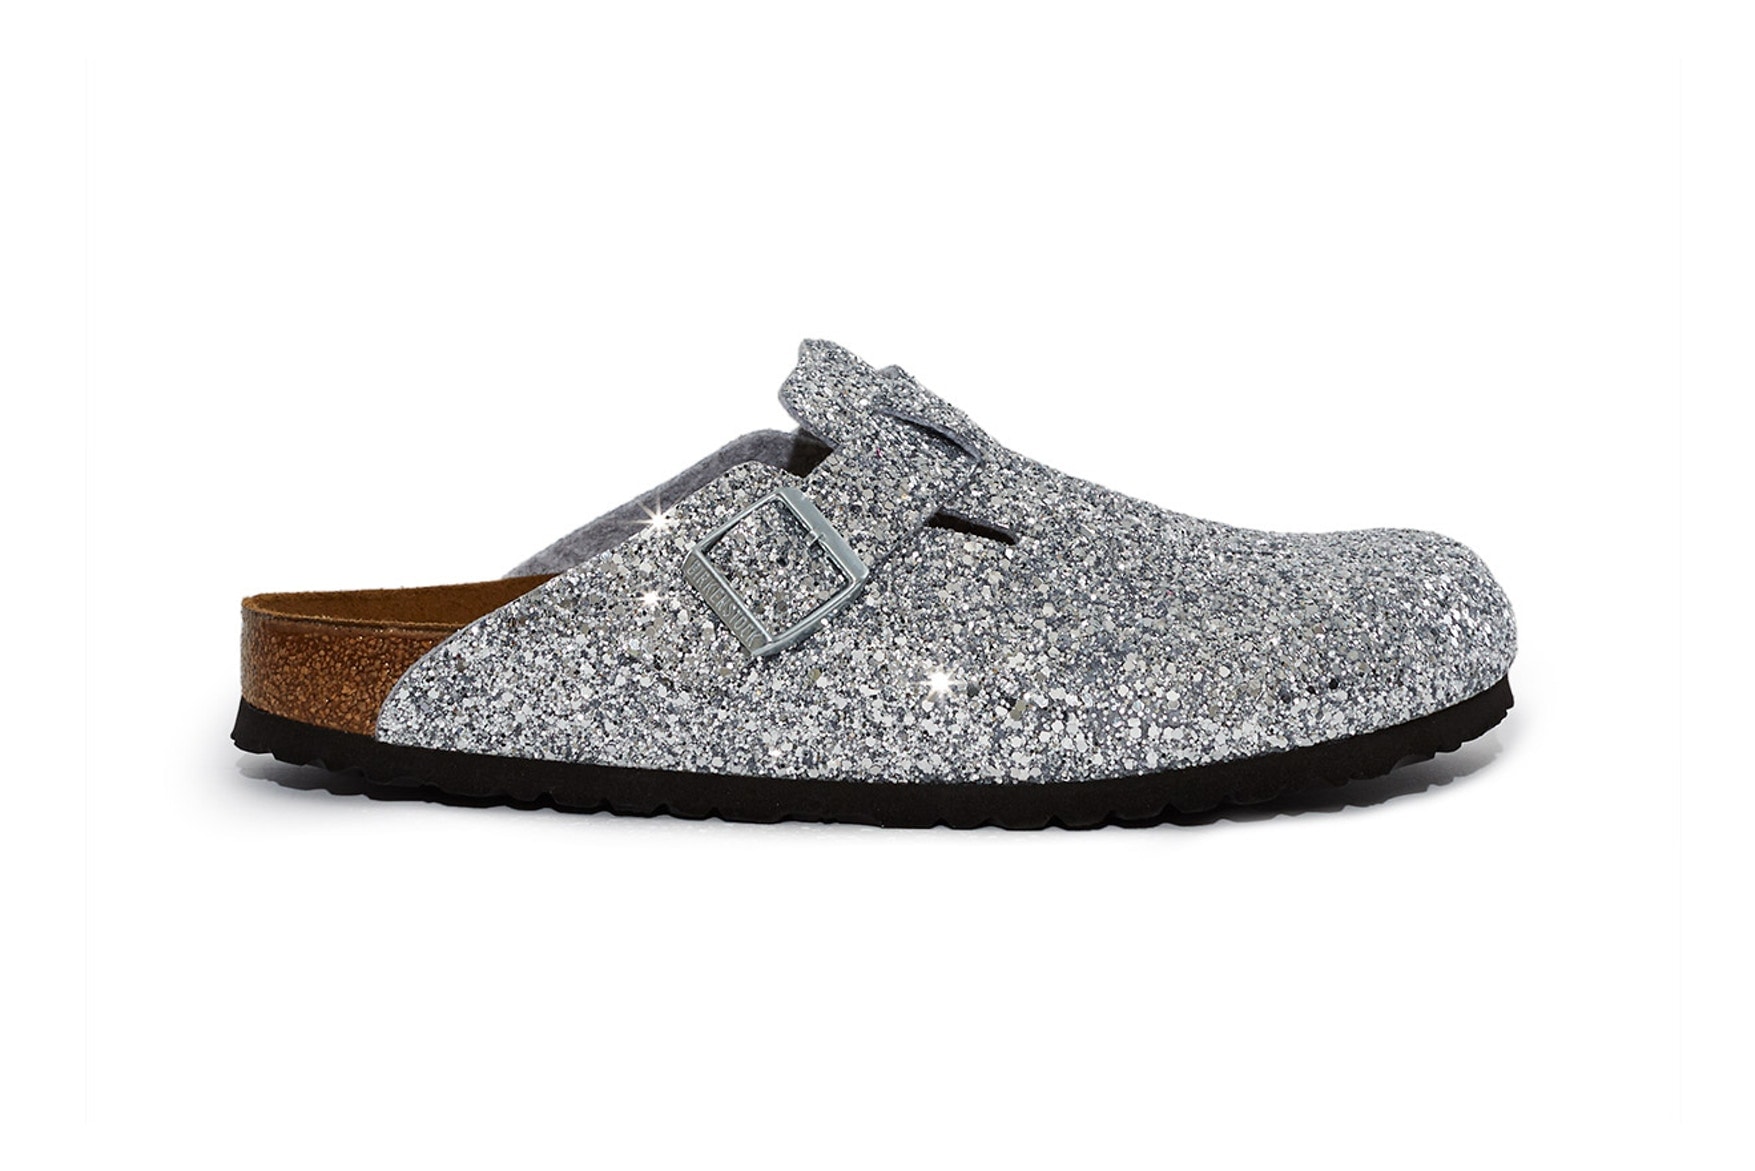 오프닝 세레모니 x 버켄스탁 '글리터' 팩 2018 opening ceremony glitter pack slippers 샌들 슬리퍼 sandal